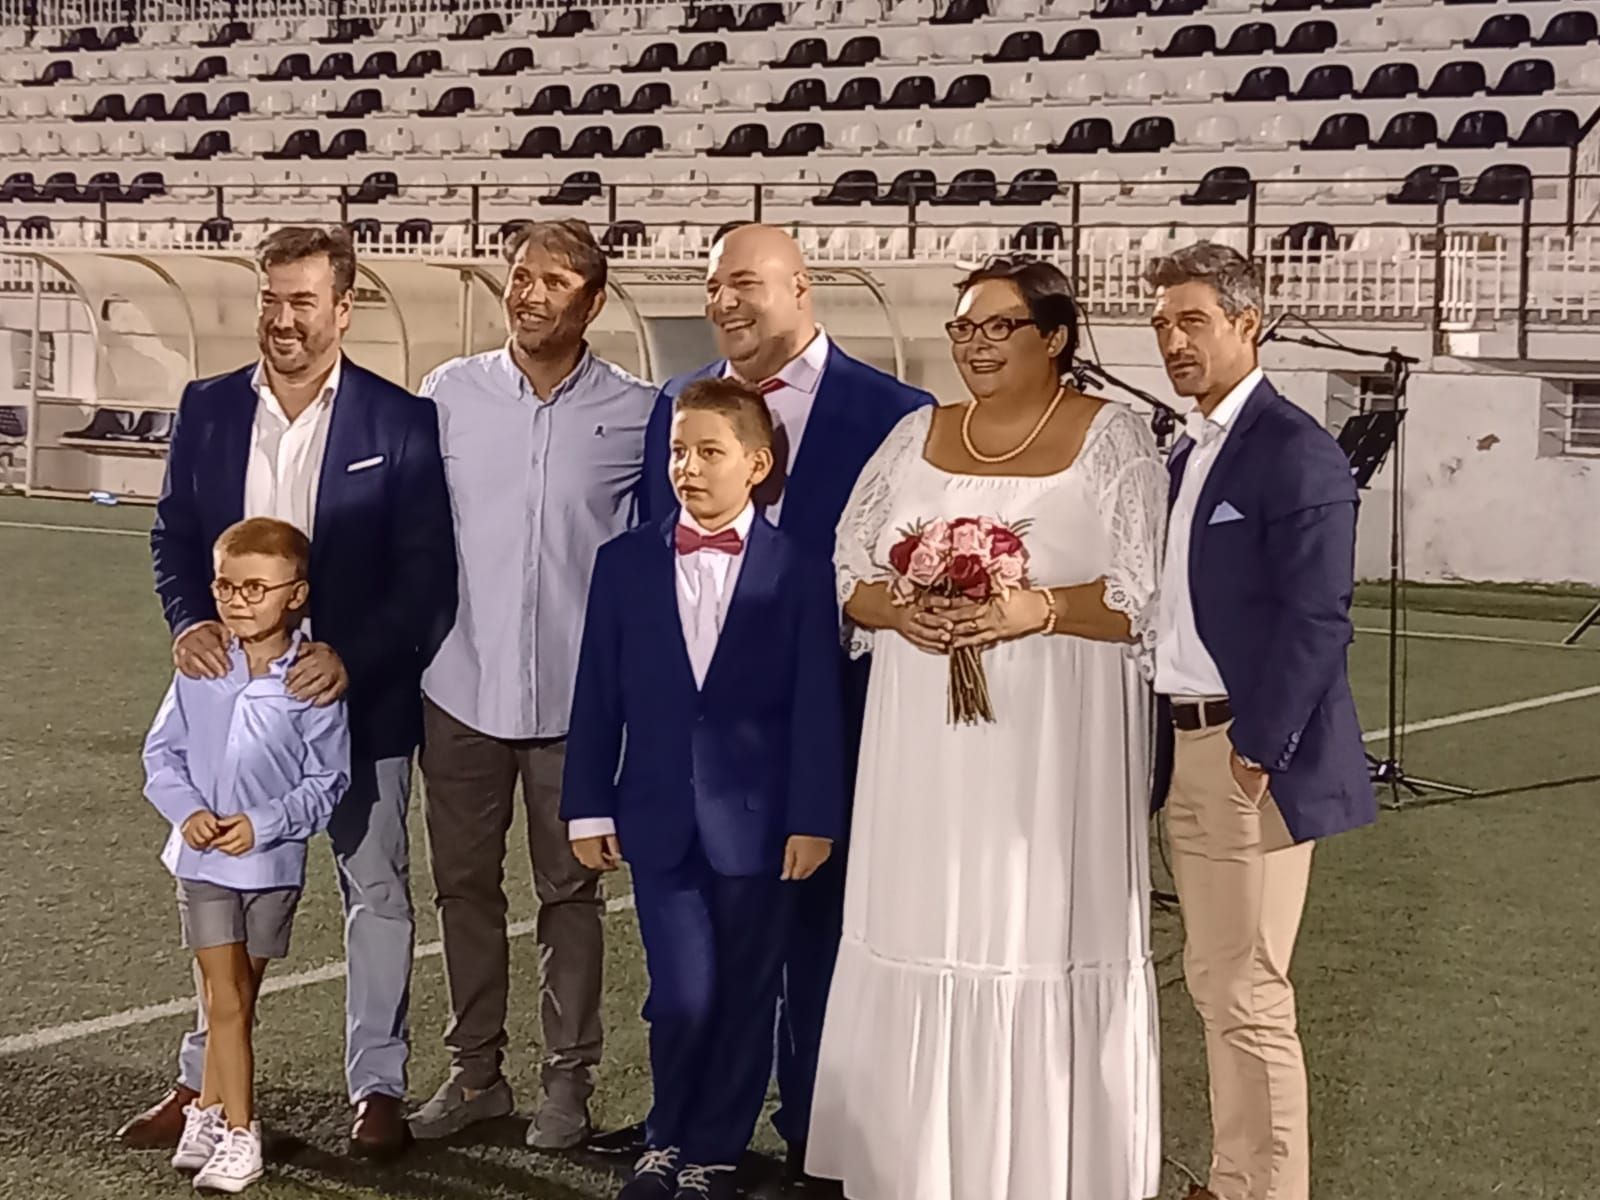 El estadio El Clariano de Ontinyent acoge la primera boda de su historia